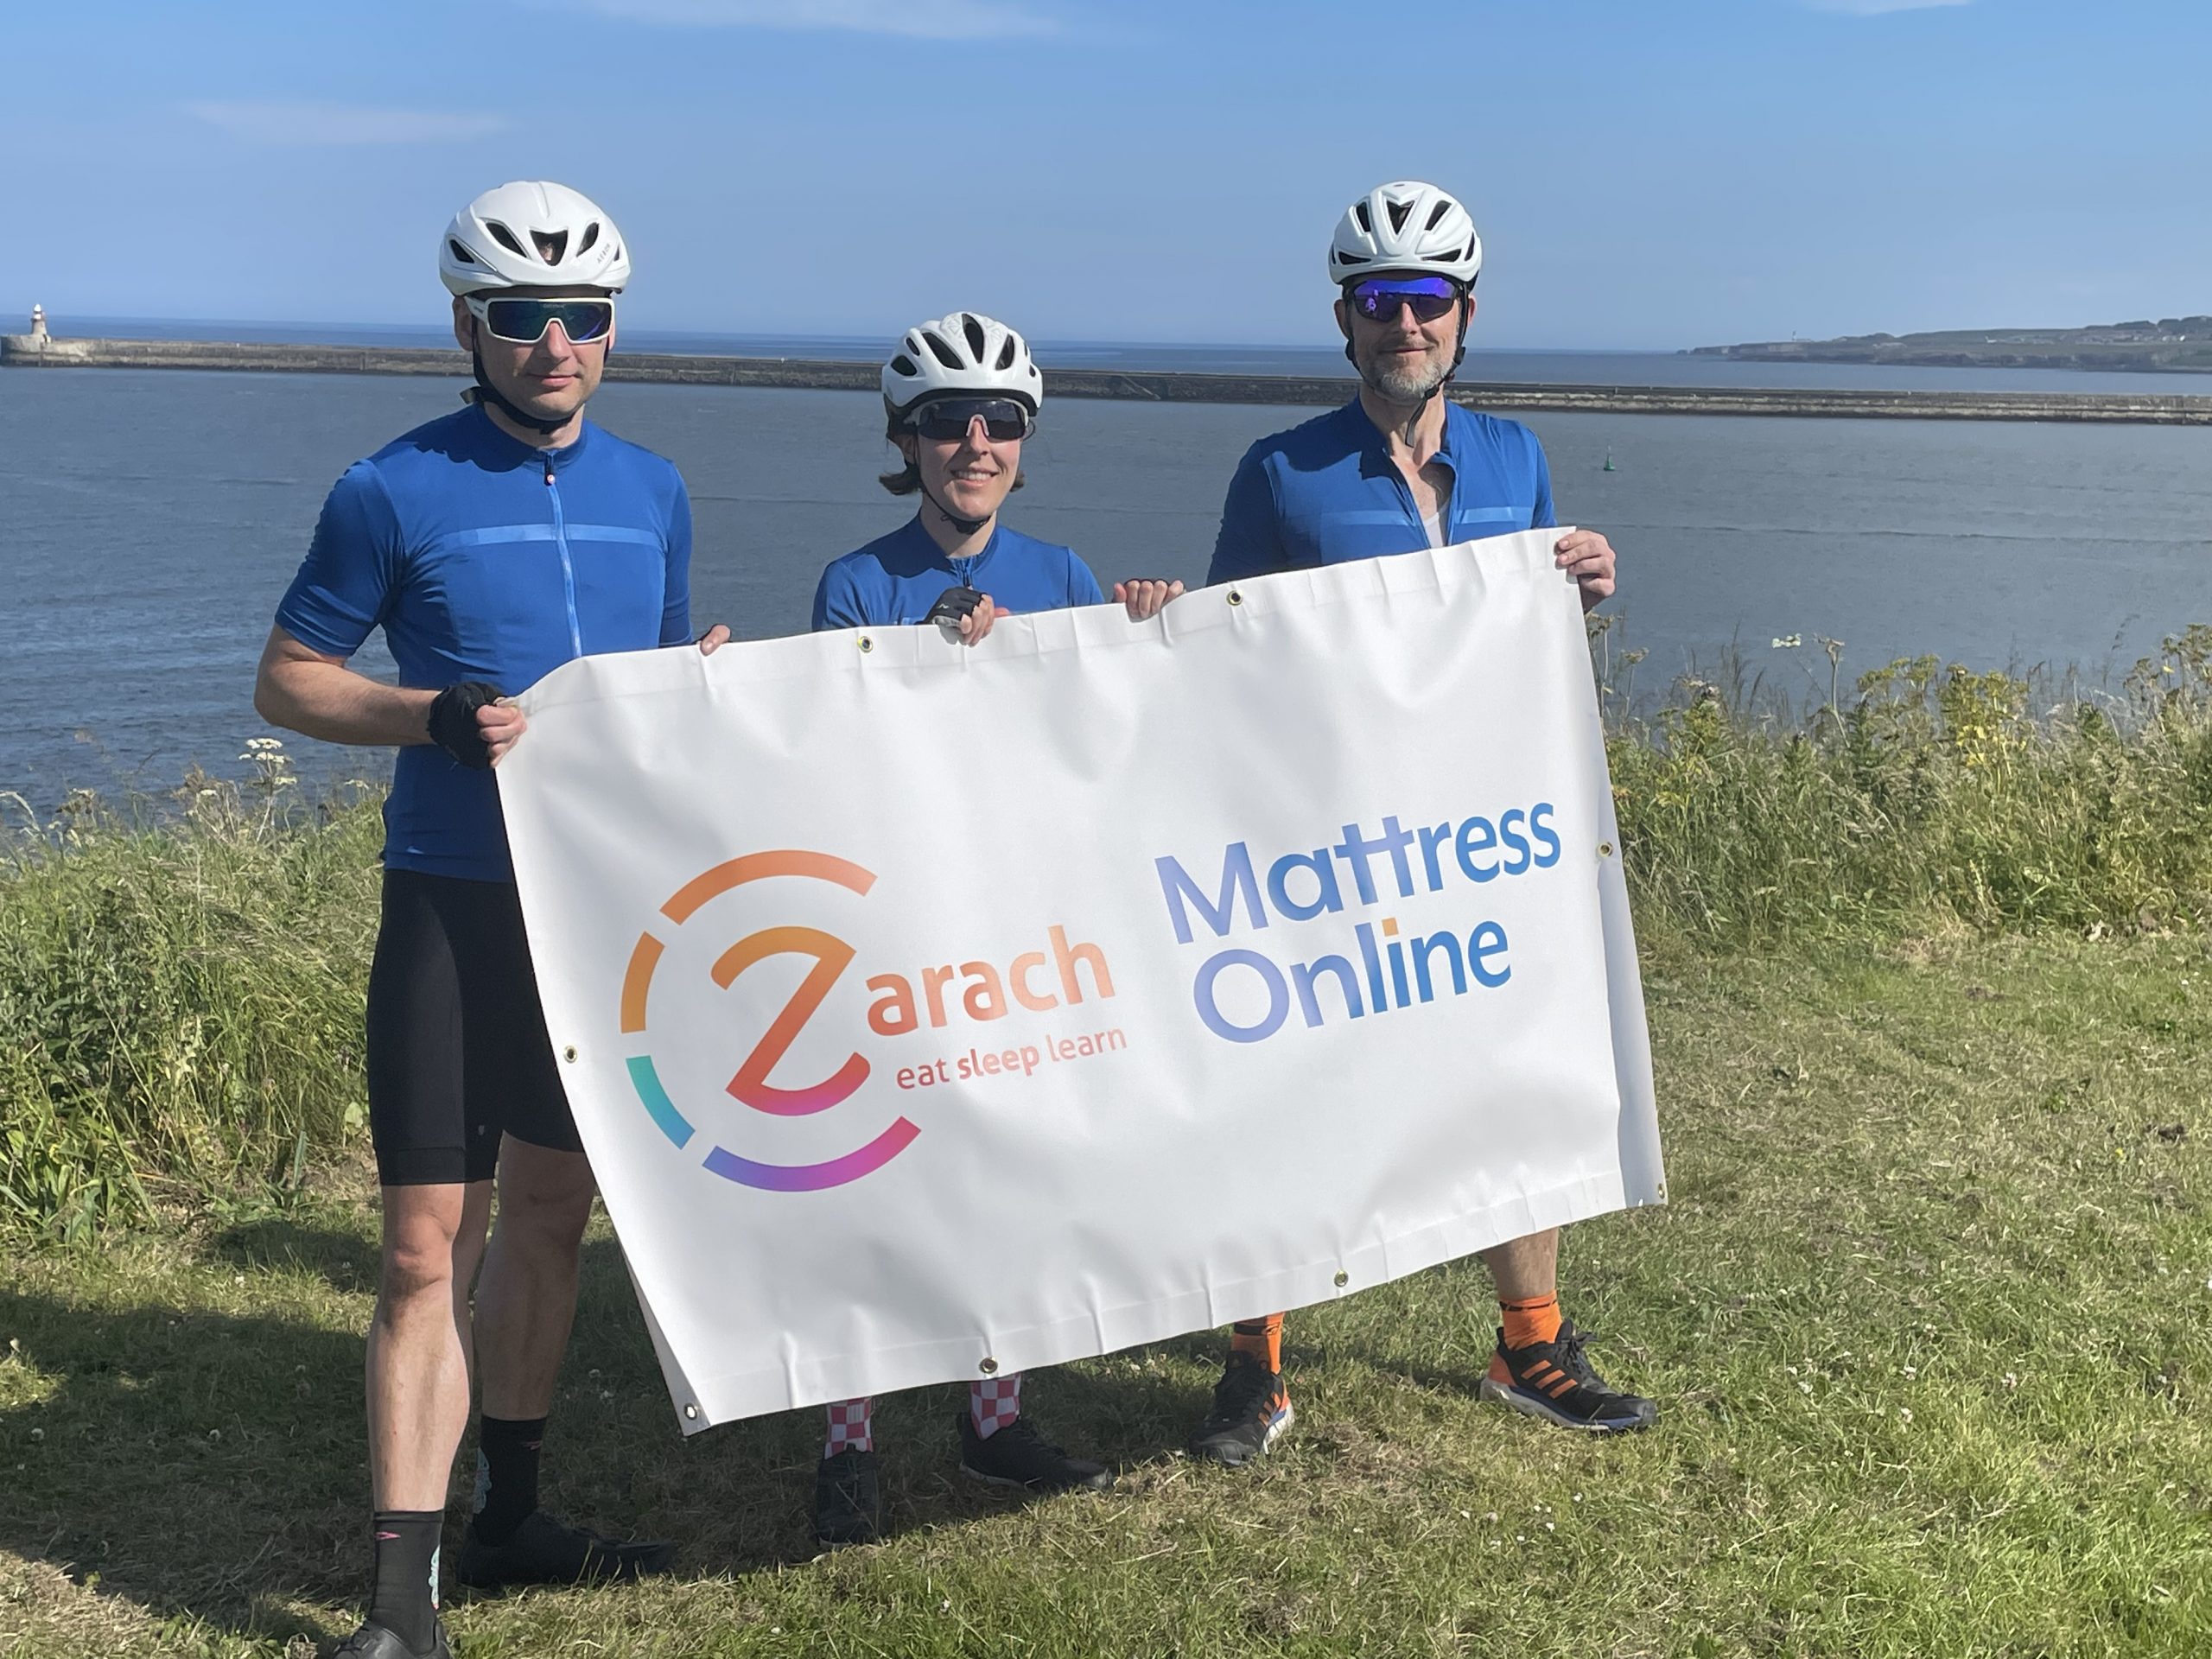 Mattress Online Complete Coast To Coast Challenge in Aid of Zarach